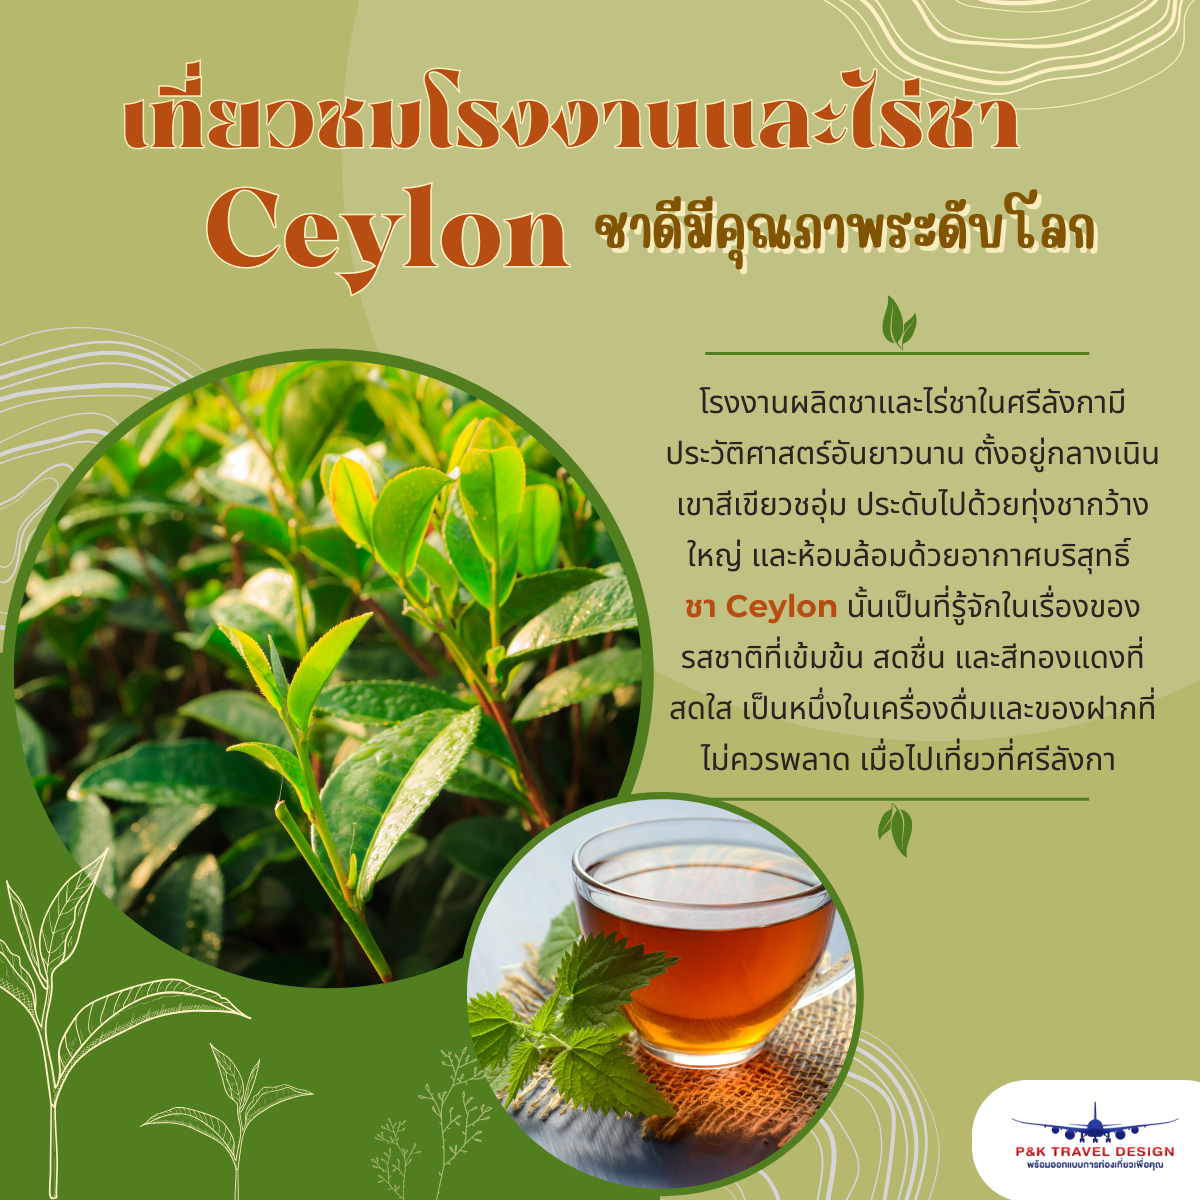 เที่ยวชมโรงงานและไร่ชา Ceylon ชาดีมีคุณภาพระดับโลก